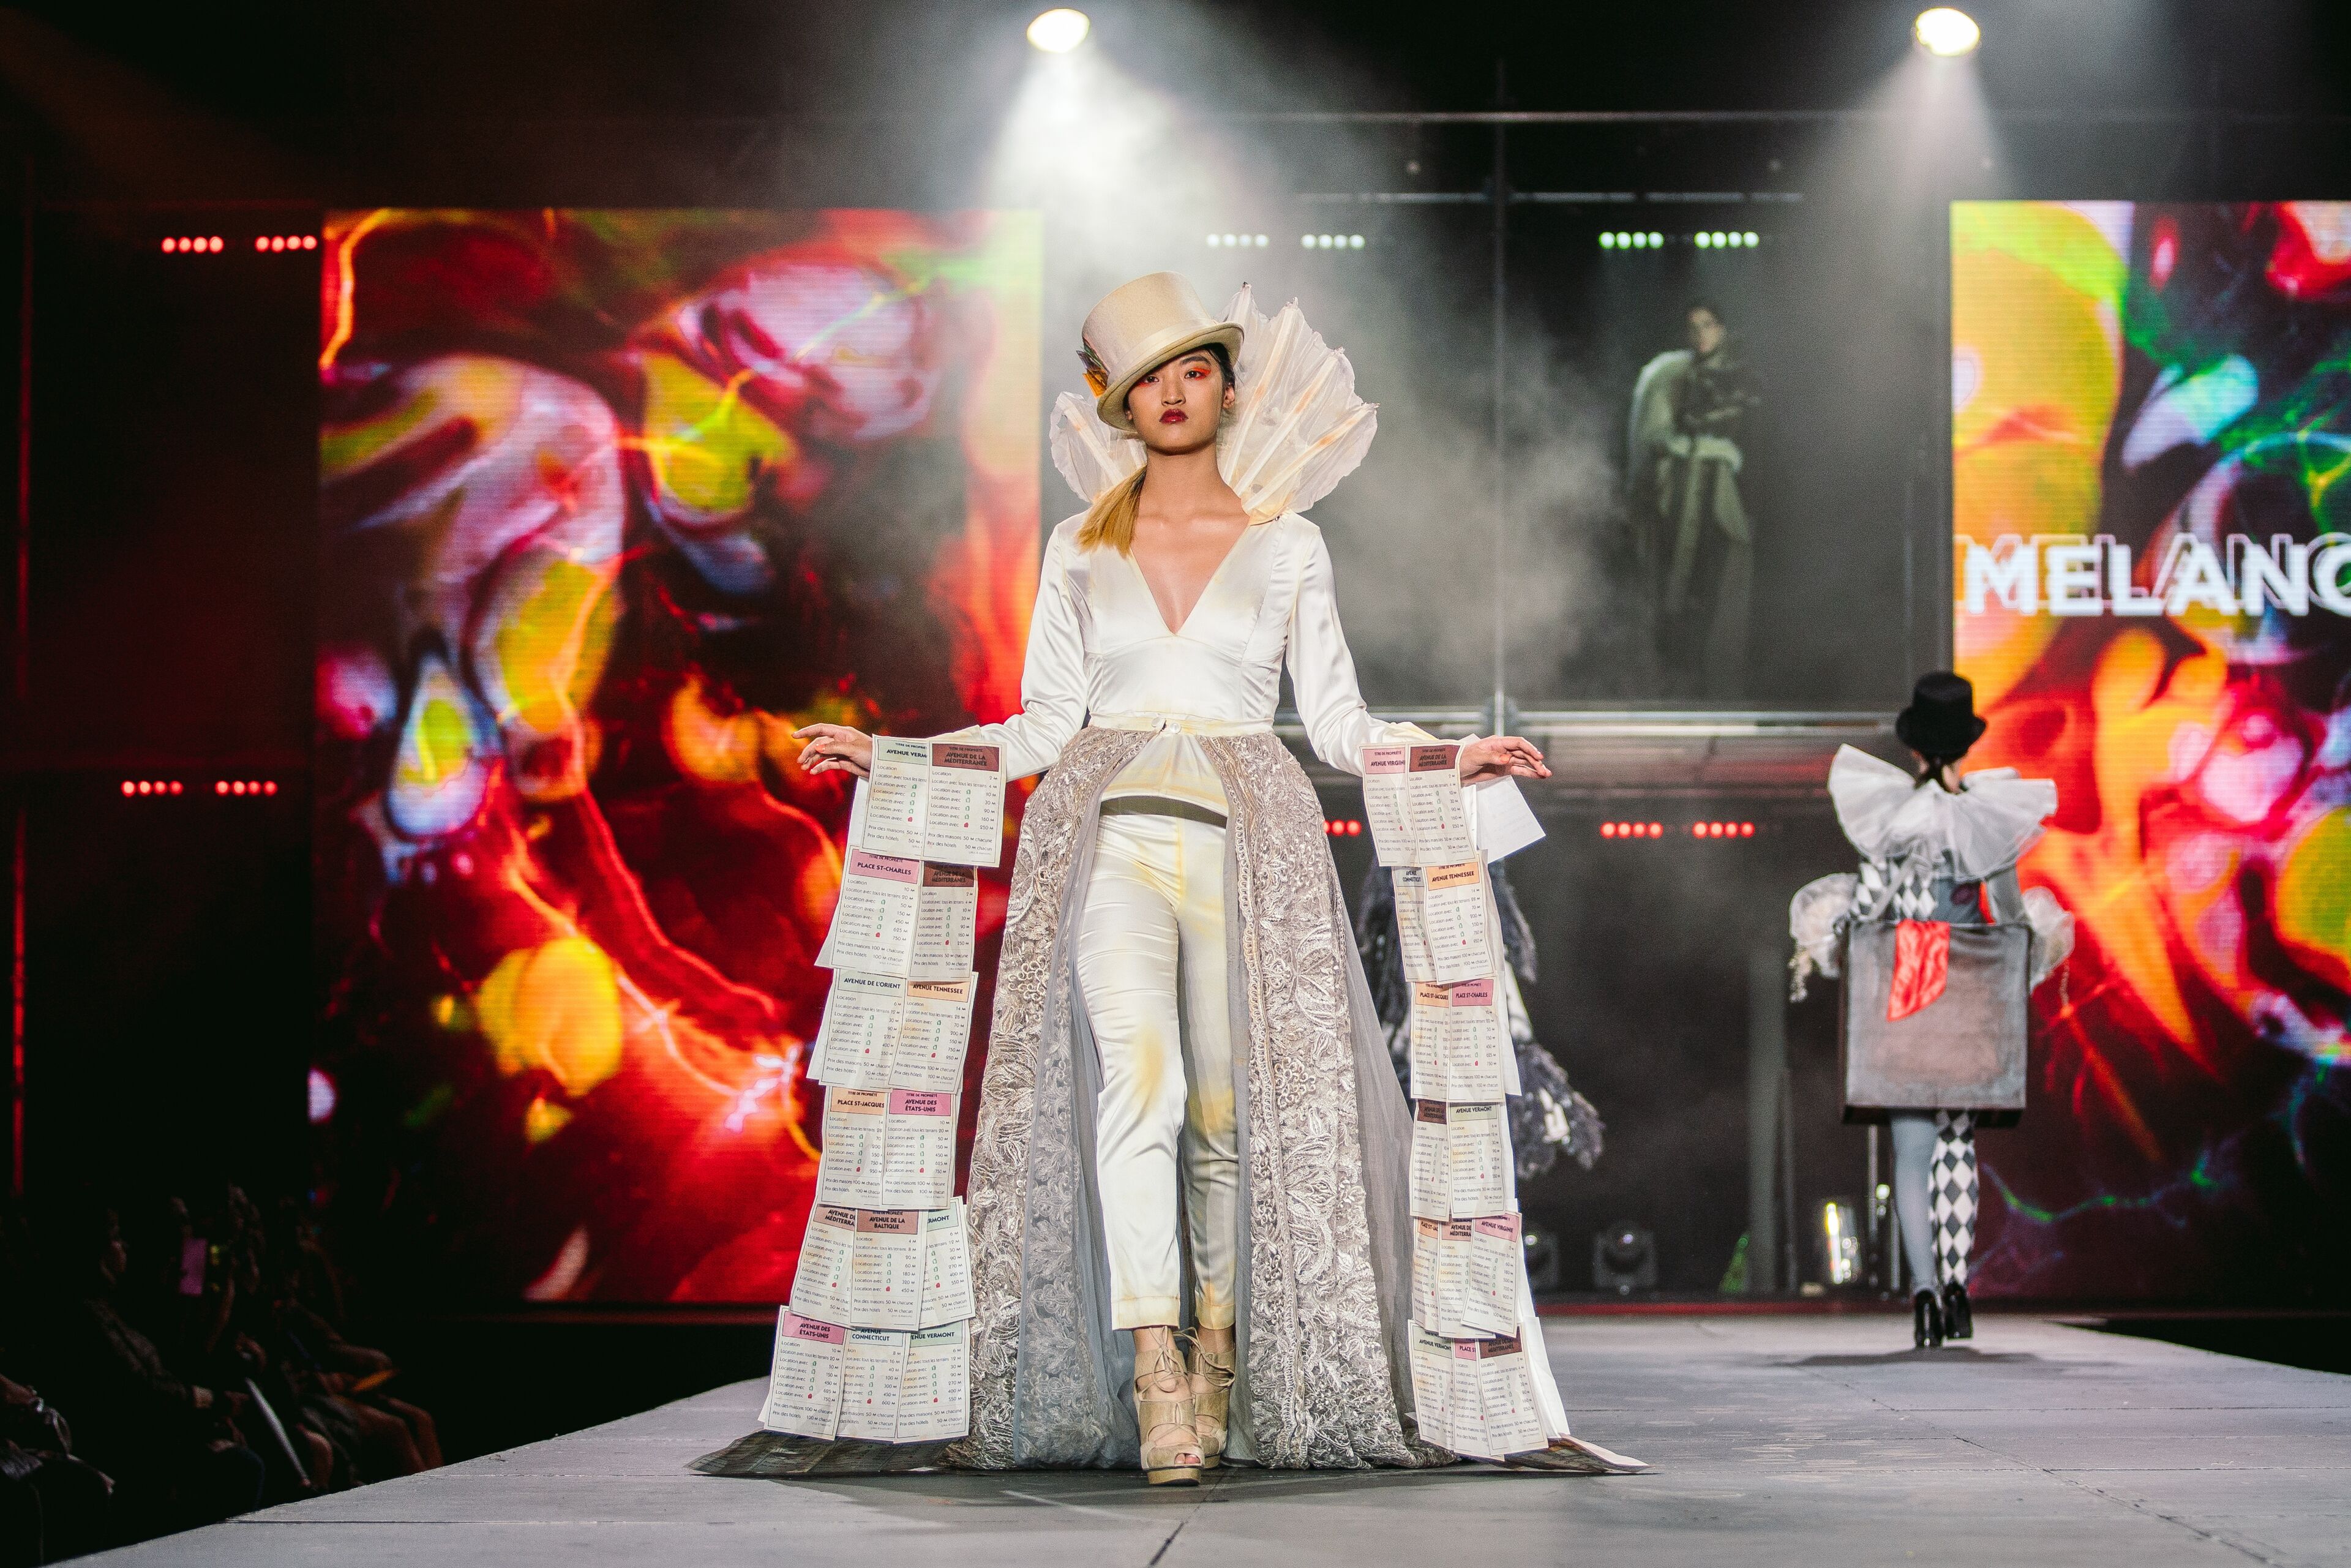 Un mannequin présente avec confiance une tenue créative avec des éléments de journal sur un podium vibrant, incarnant un design novateur.